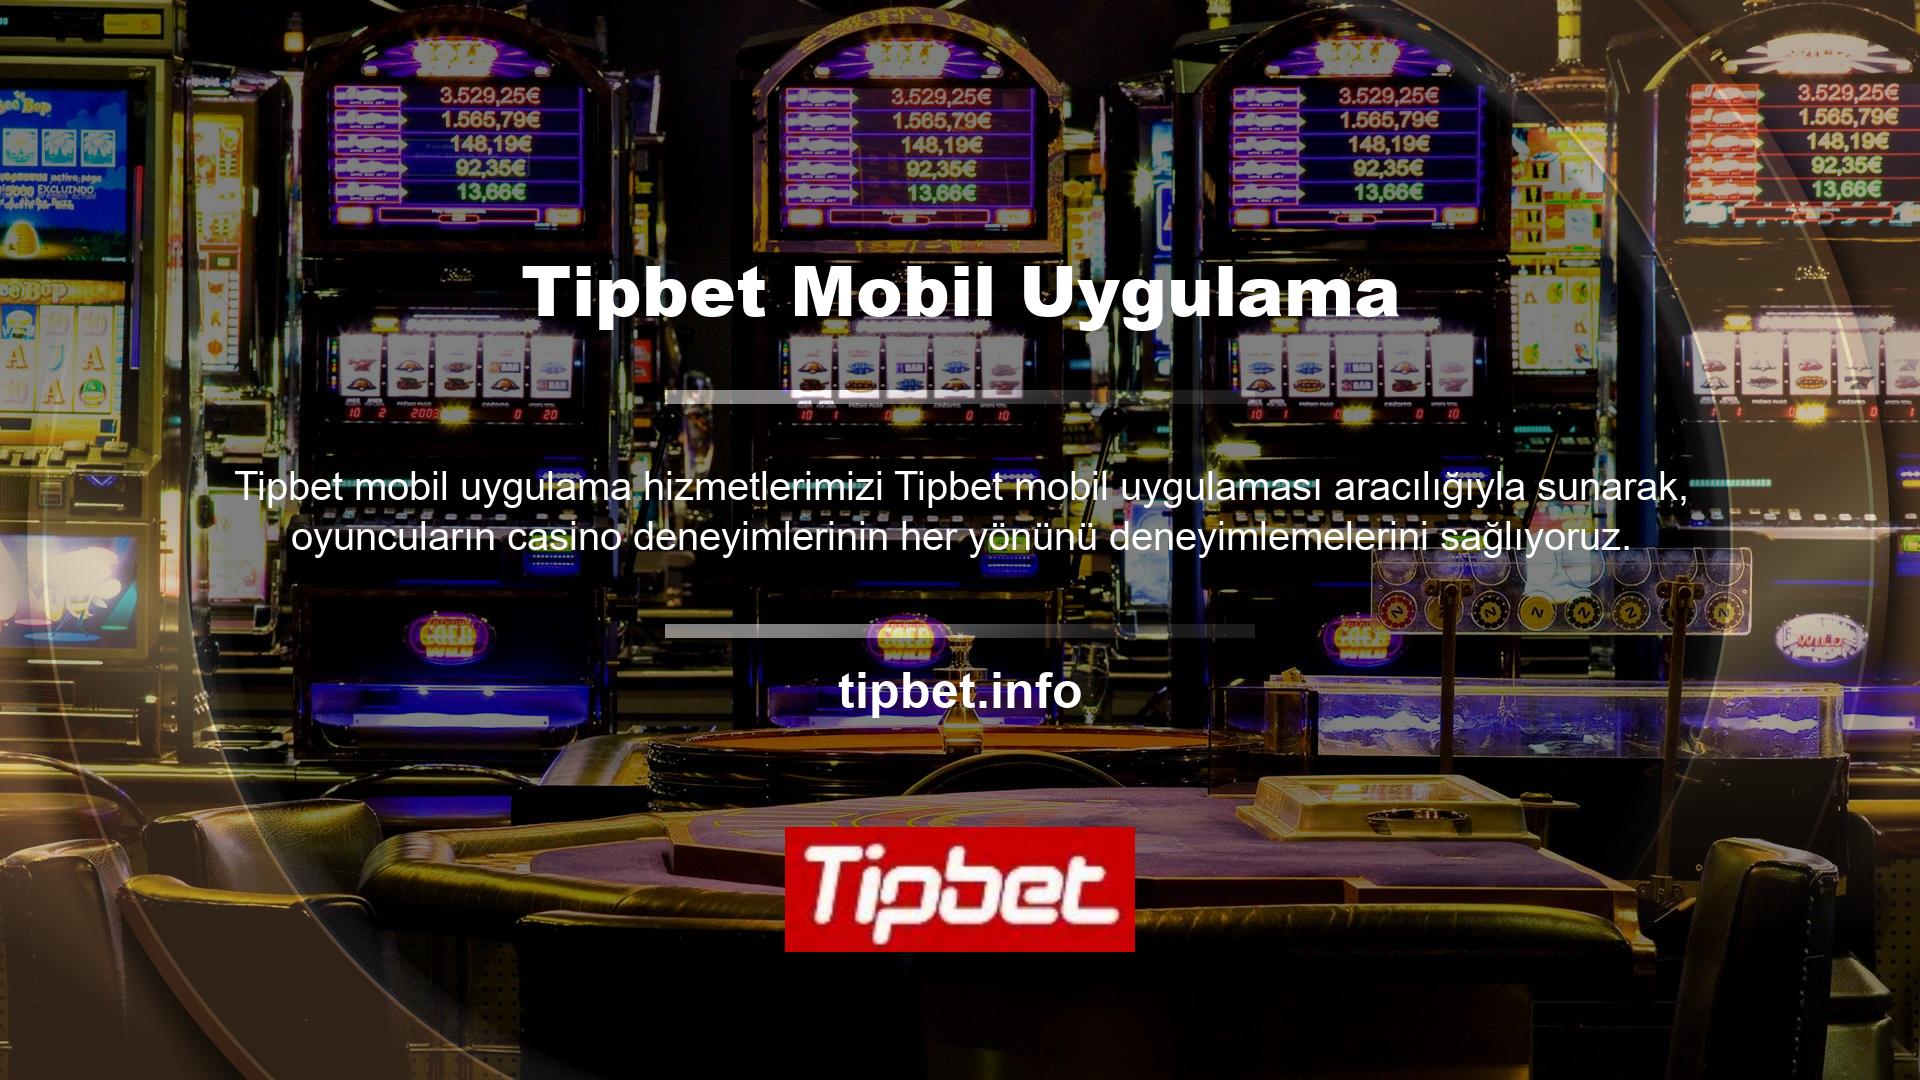 Harika bir casino deneyimi ve kaliteli oyunlar sunan Tipbet, uzun yıllardır Türkiye'de faaliyet gösteren en güçlü şirketlerden biri olmuştur